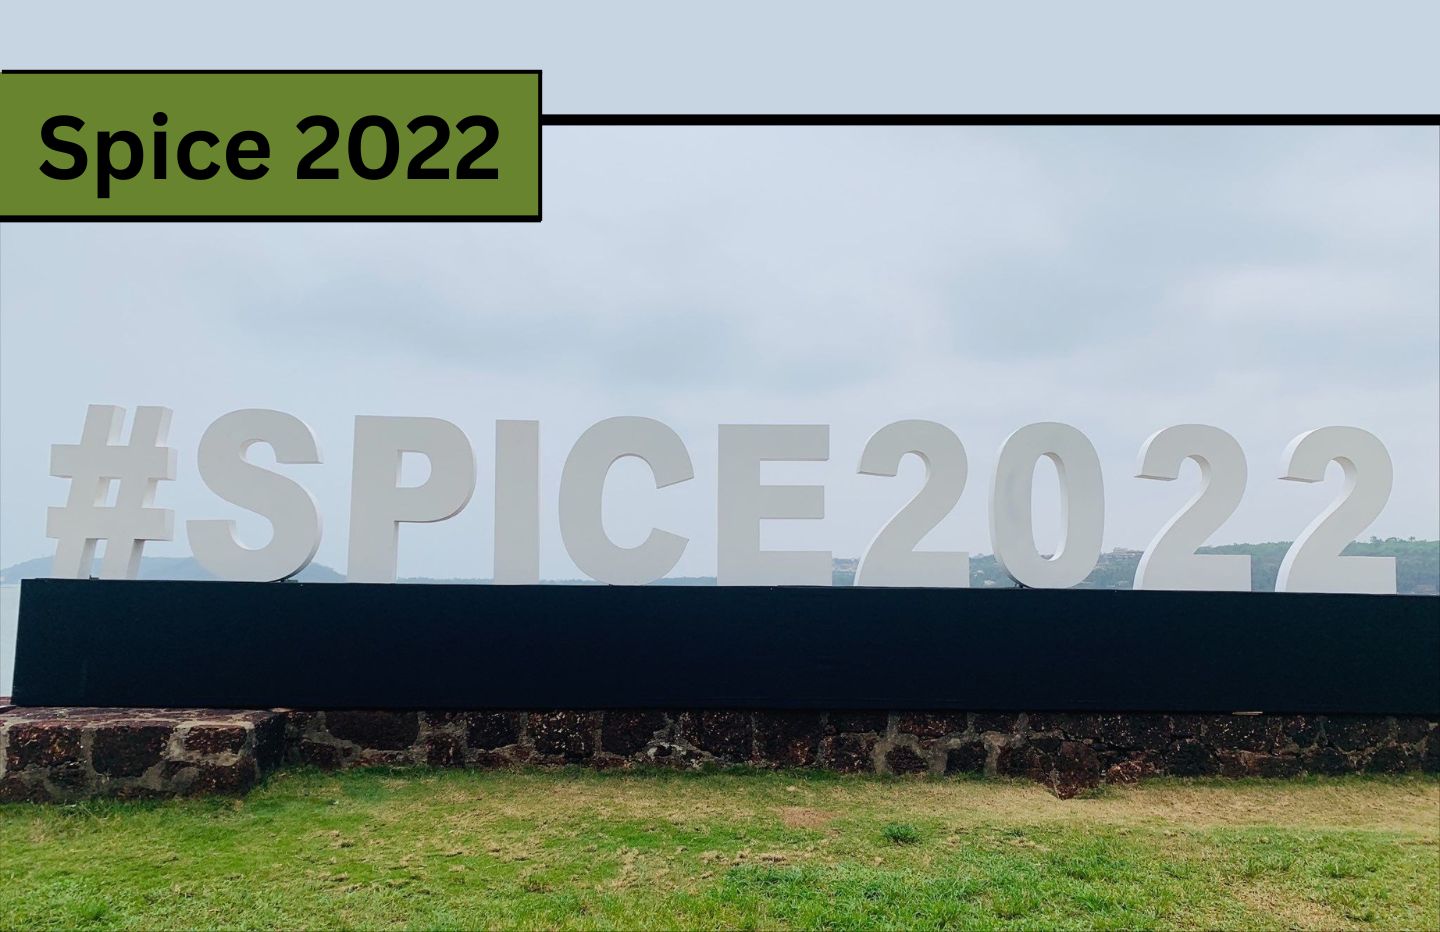 Spice 2022 addtitans